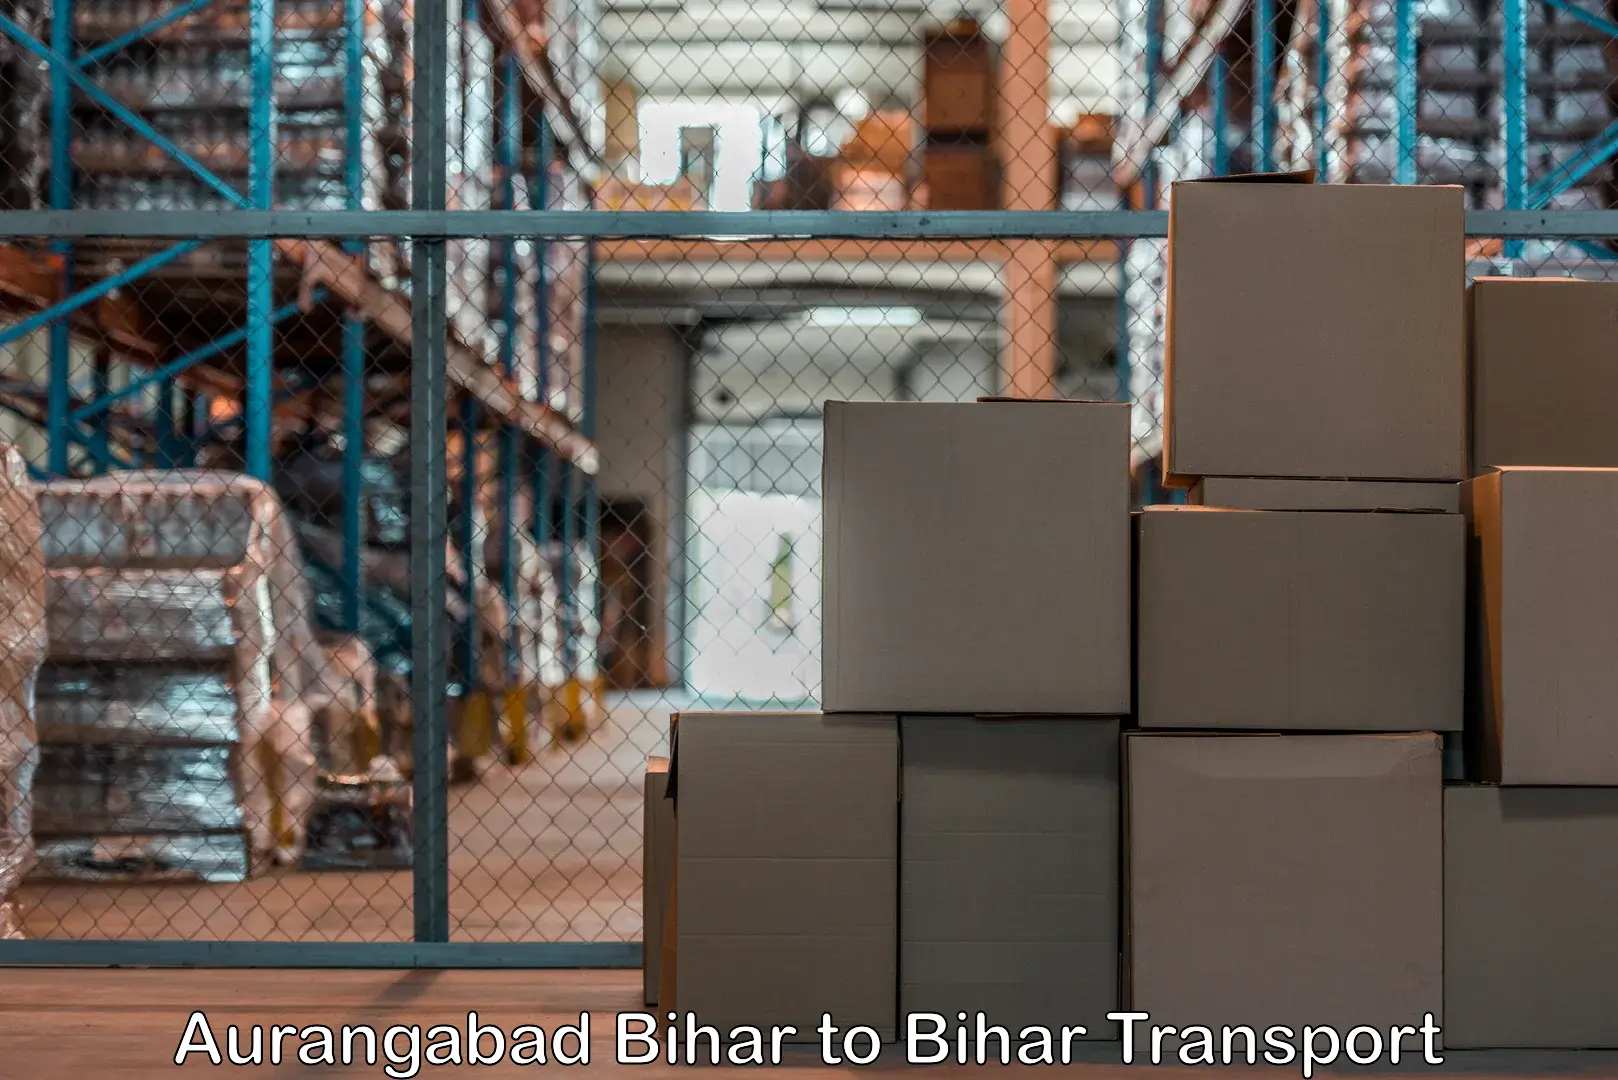 International cargo transportation services Aurangabad Bihar to Palasi Araria